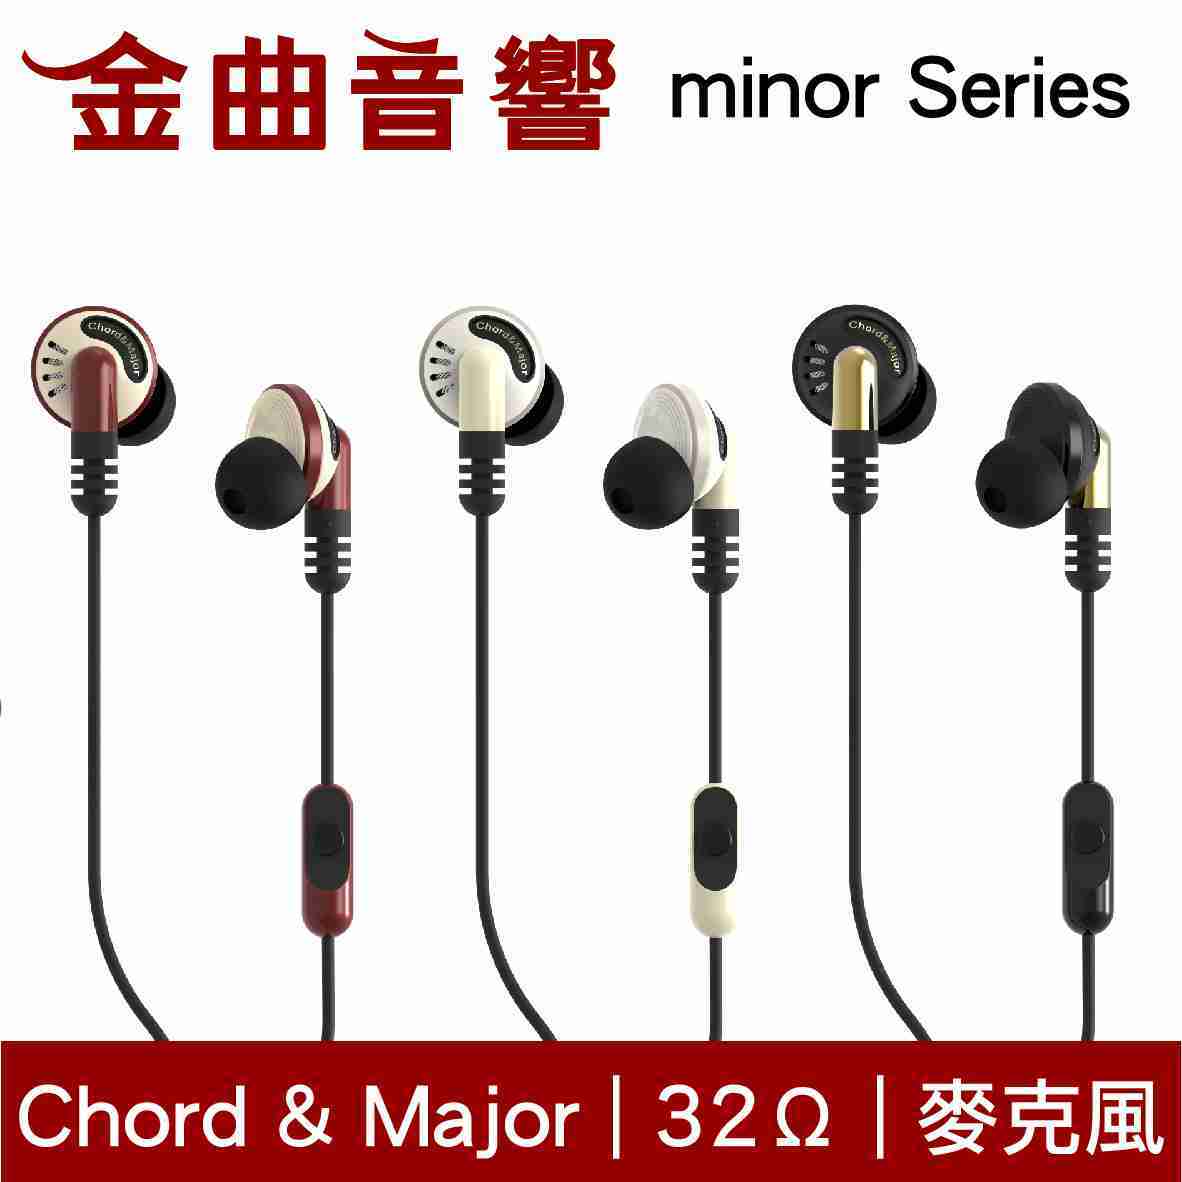 Chord & Major 小調性耳機 minor series 通話 耳道式 耳機 | 金曲音響